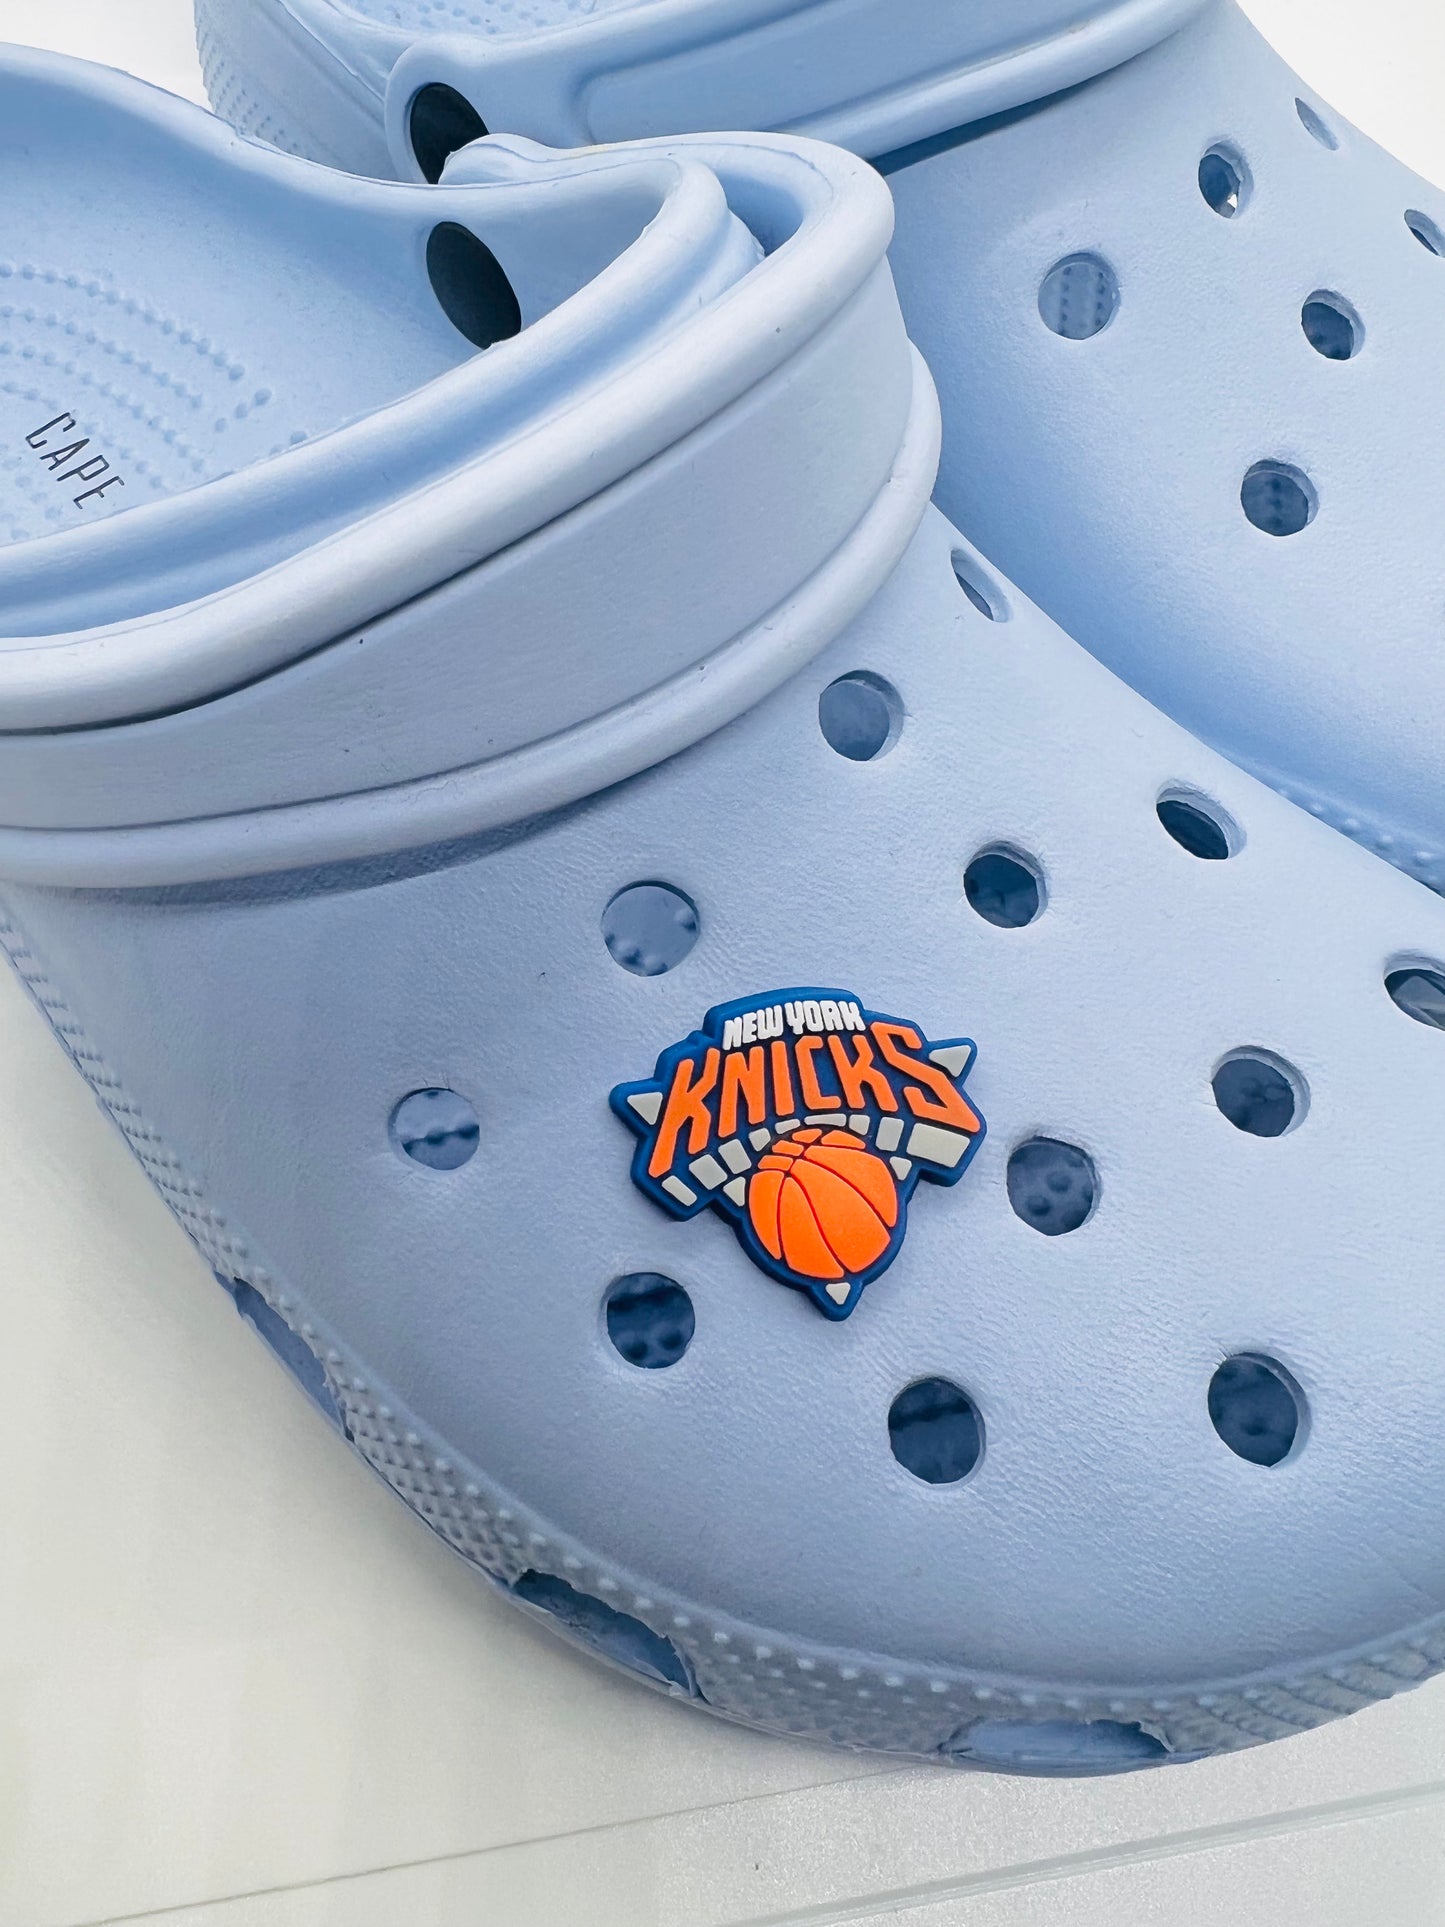 Knicks Shoe Charm